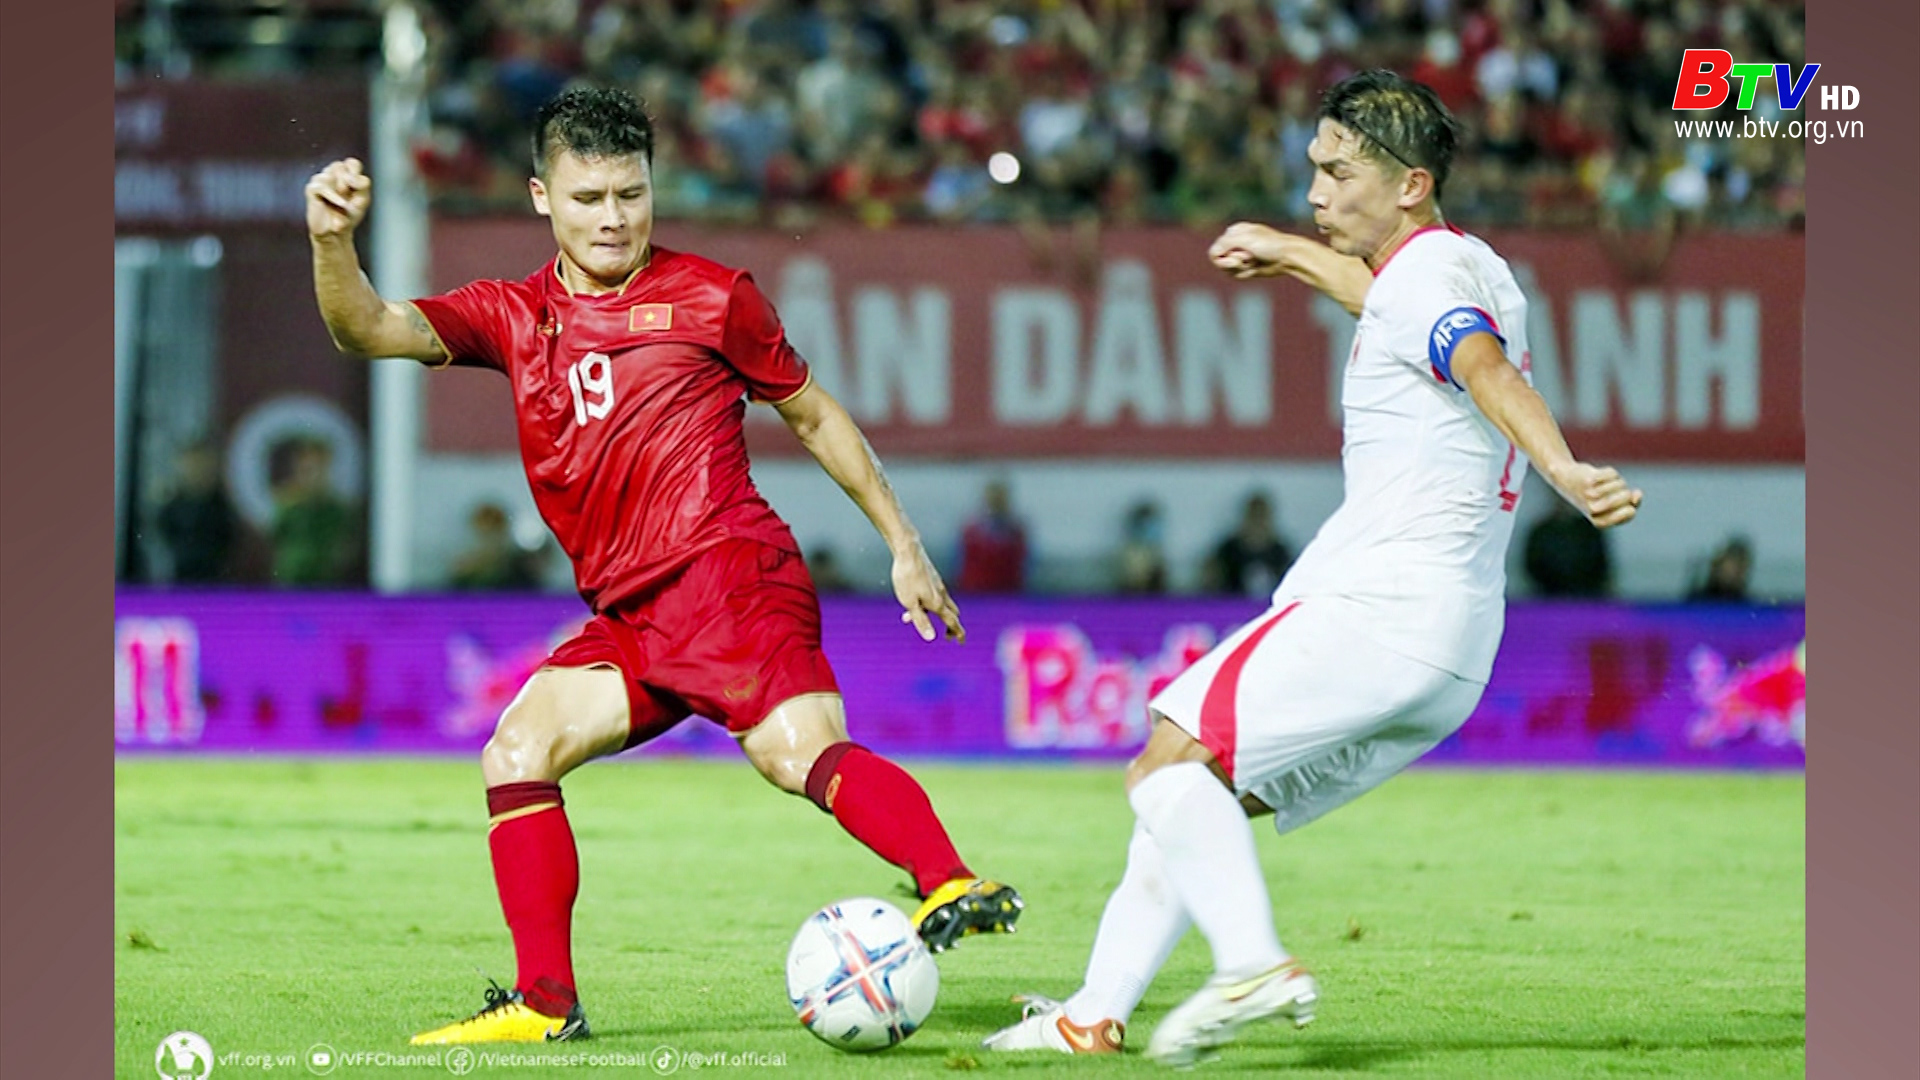 Đội tuyển Việt Nam - Đội tuyển Hồng Kông (TQ): 1 - 0